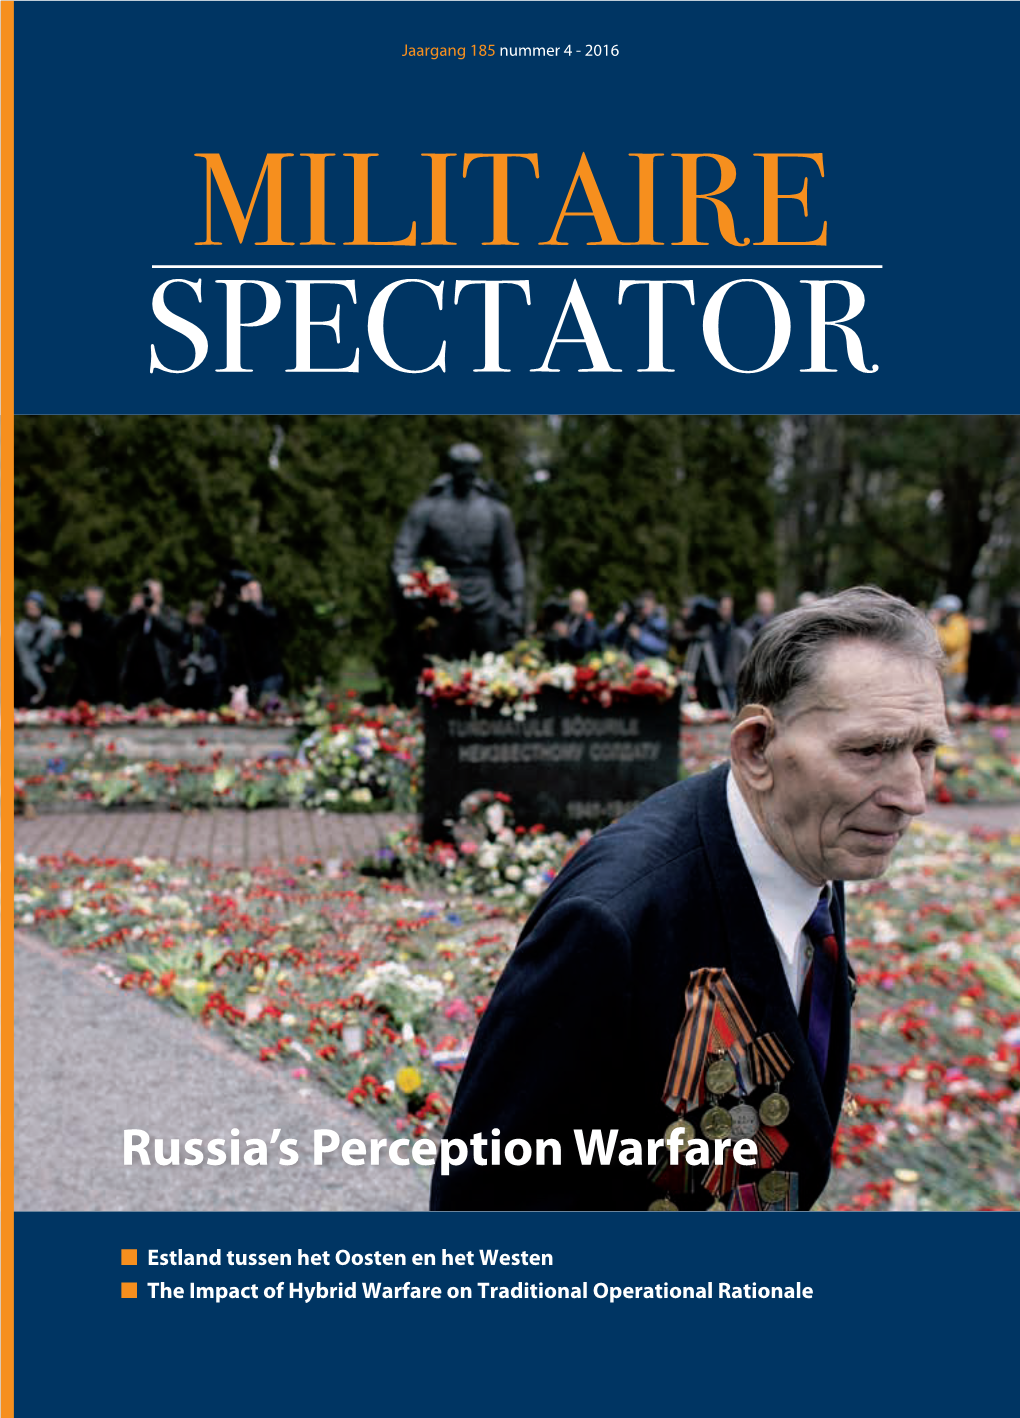 Russia's Perception Warfare